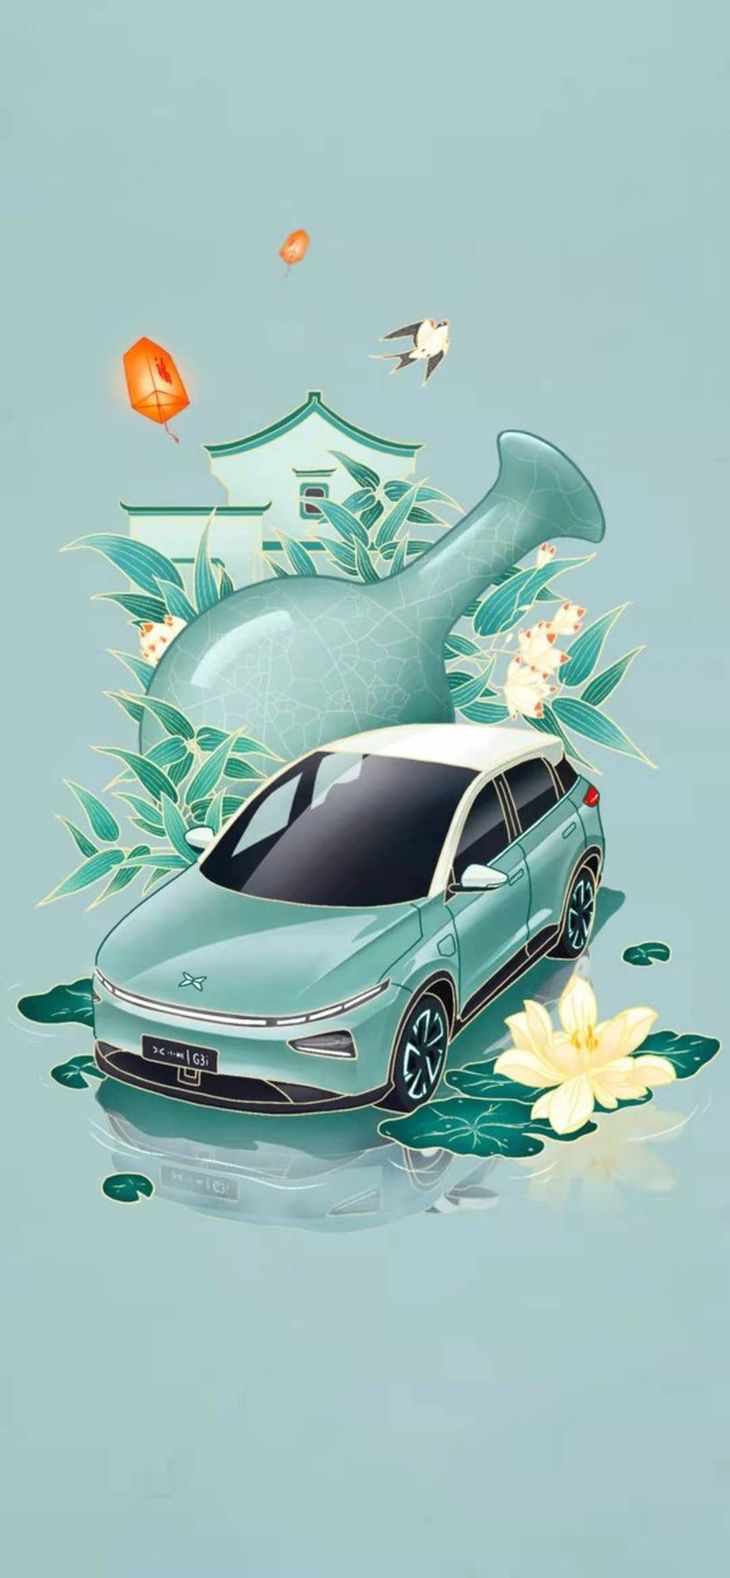 小鹏G3i五种车身颜色发布 将于7月9日正式上市